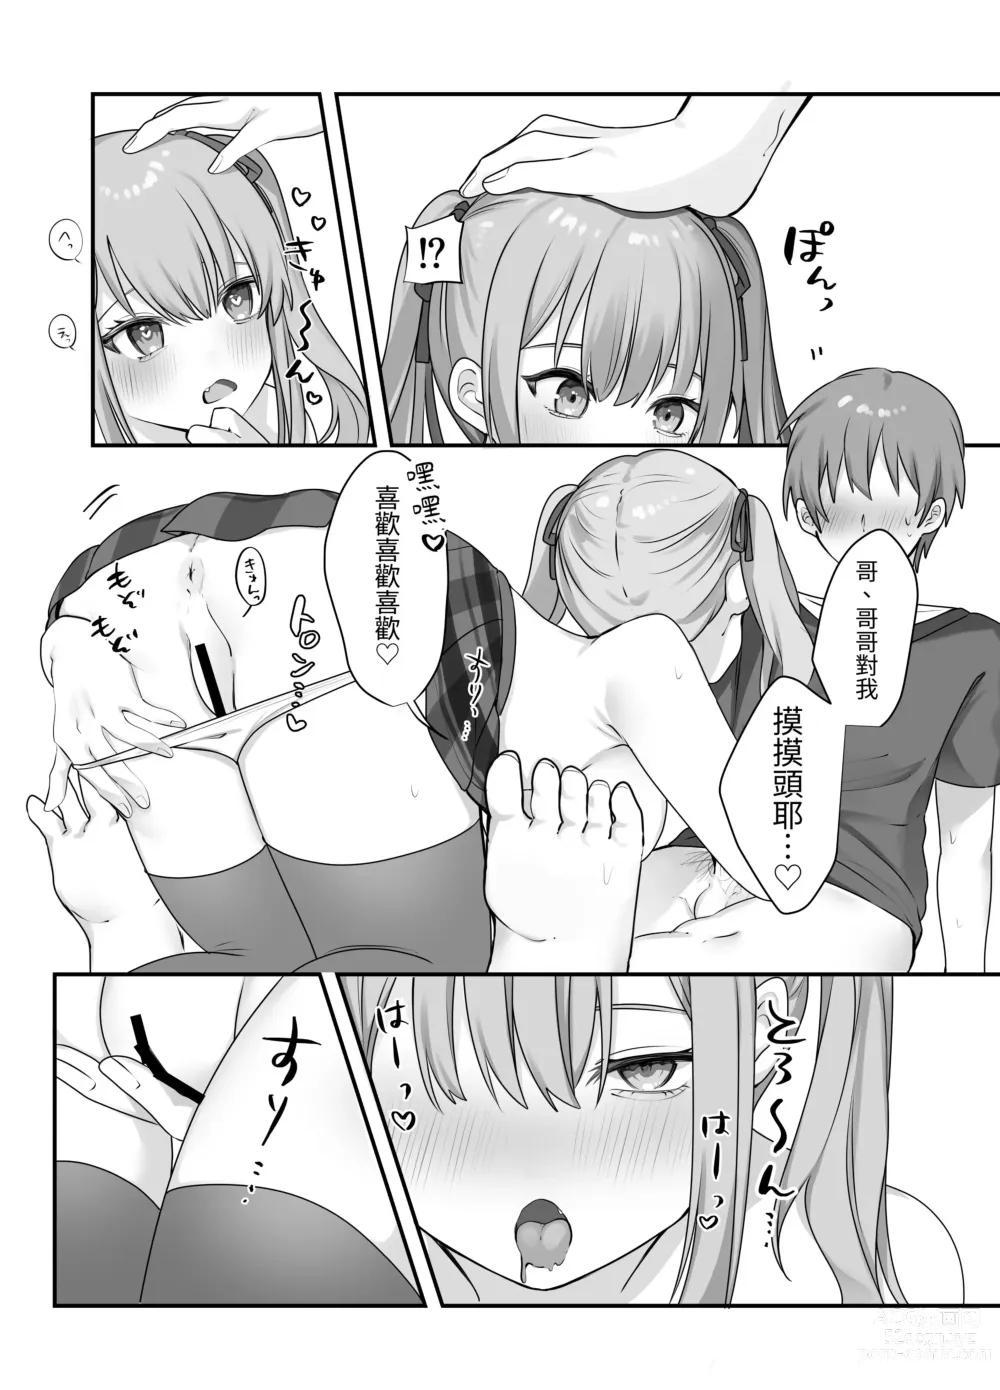 Page 25 of doujinshi Sex Shinai to Derarenai Heya ni Naka no Warui Imouto to Tojikomerareru